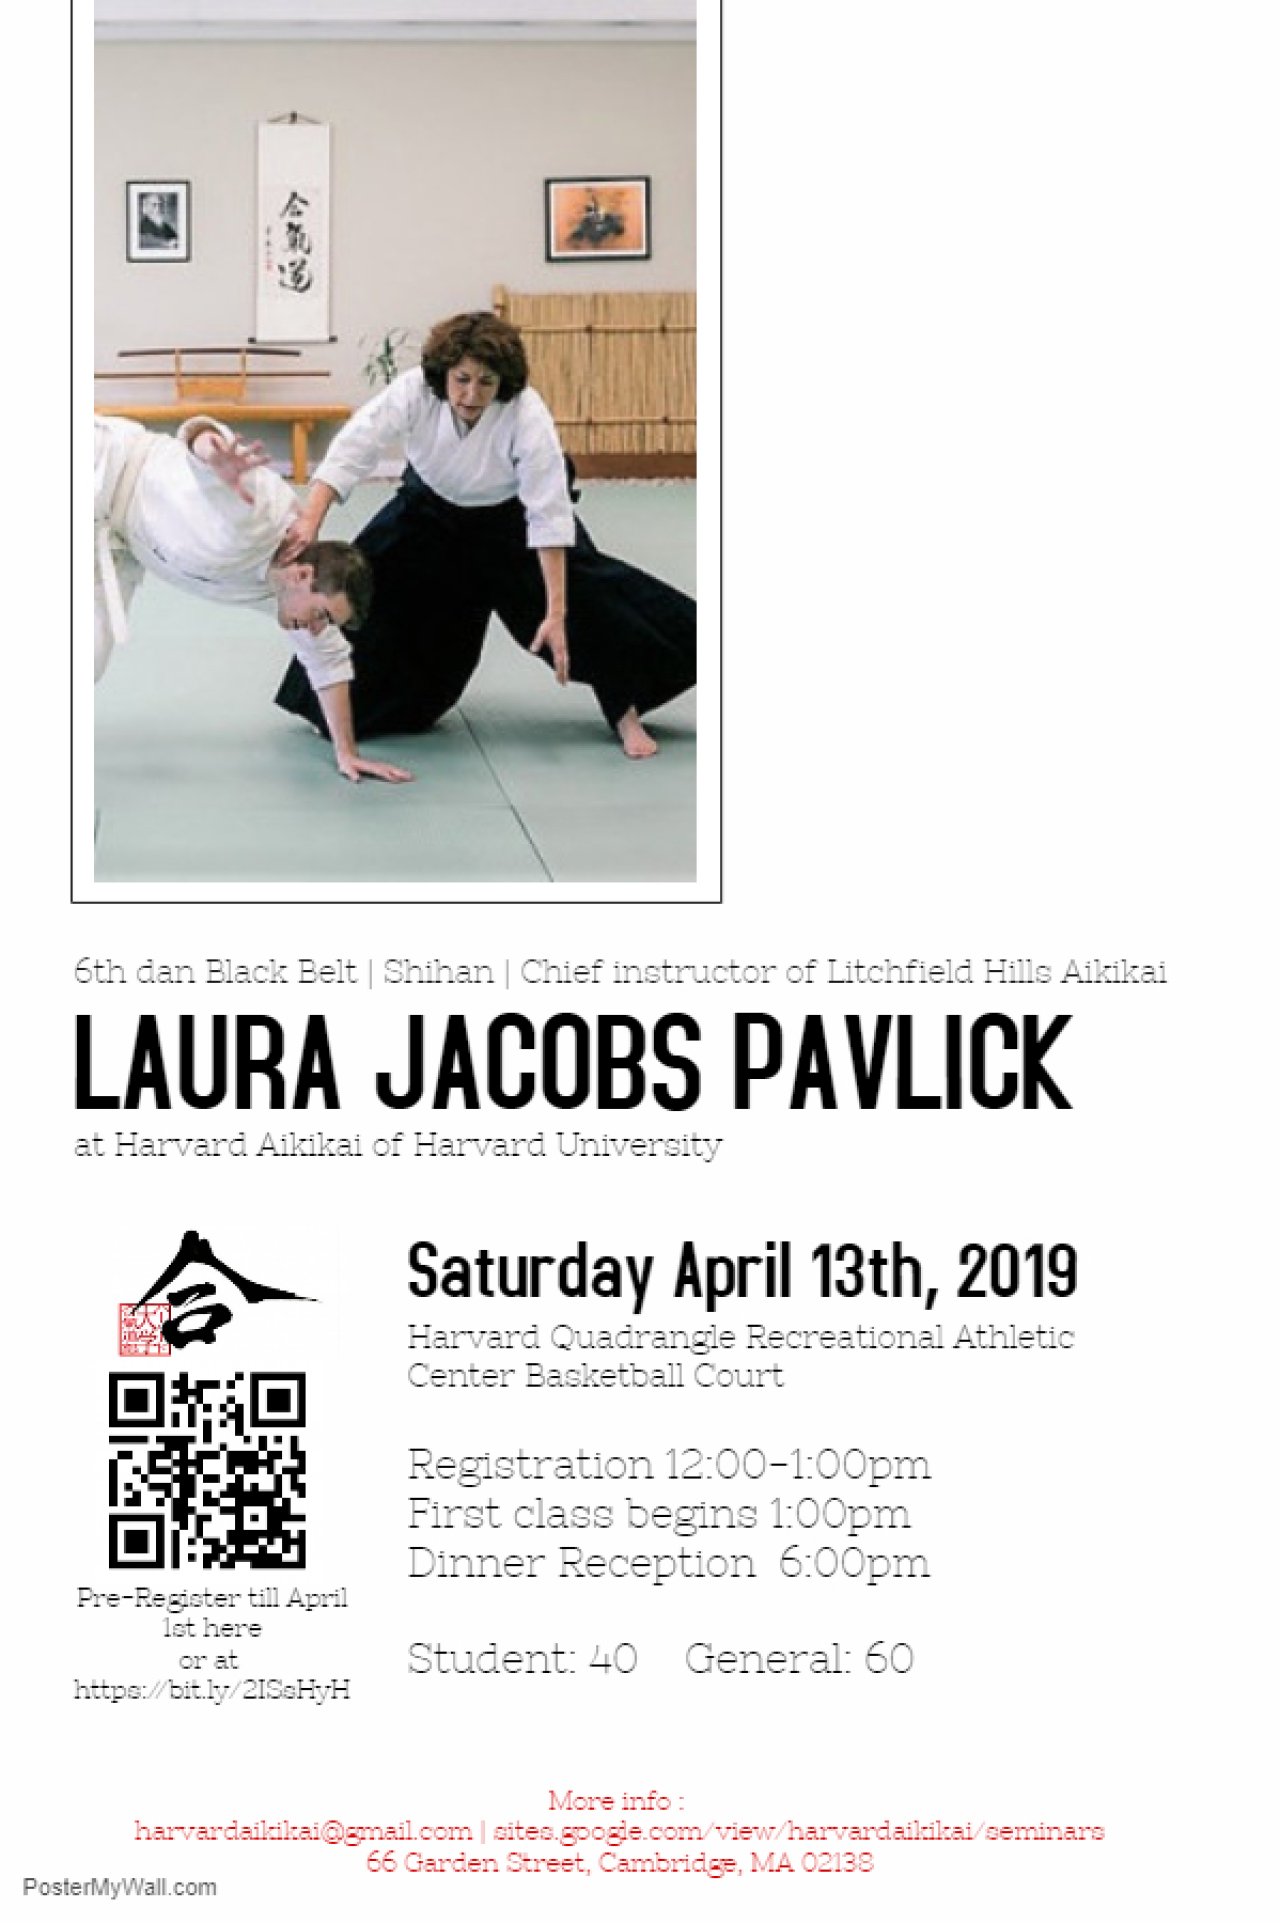 Laura Jacobs Pavlick 6th Dan Shihan Sioux Hall Memorial